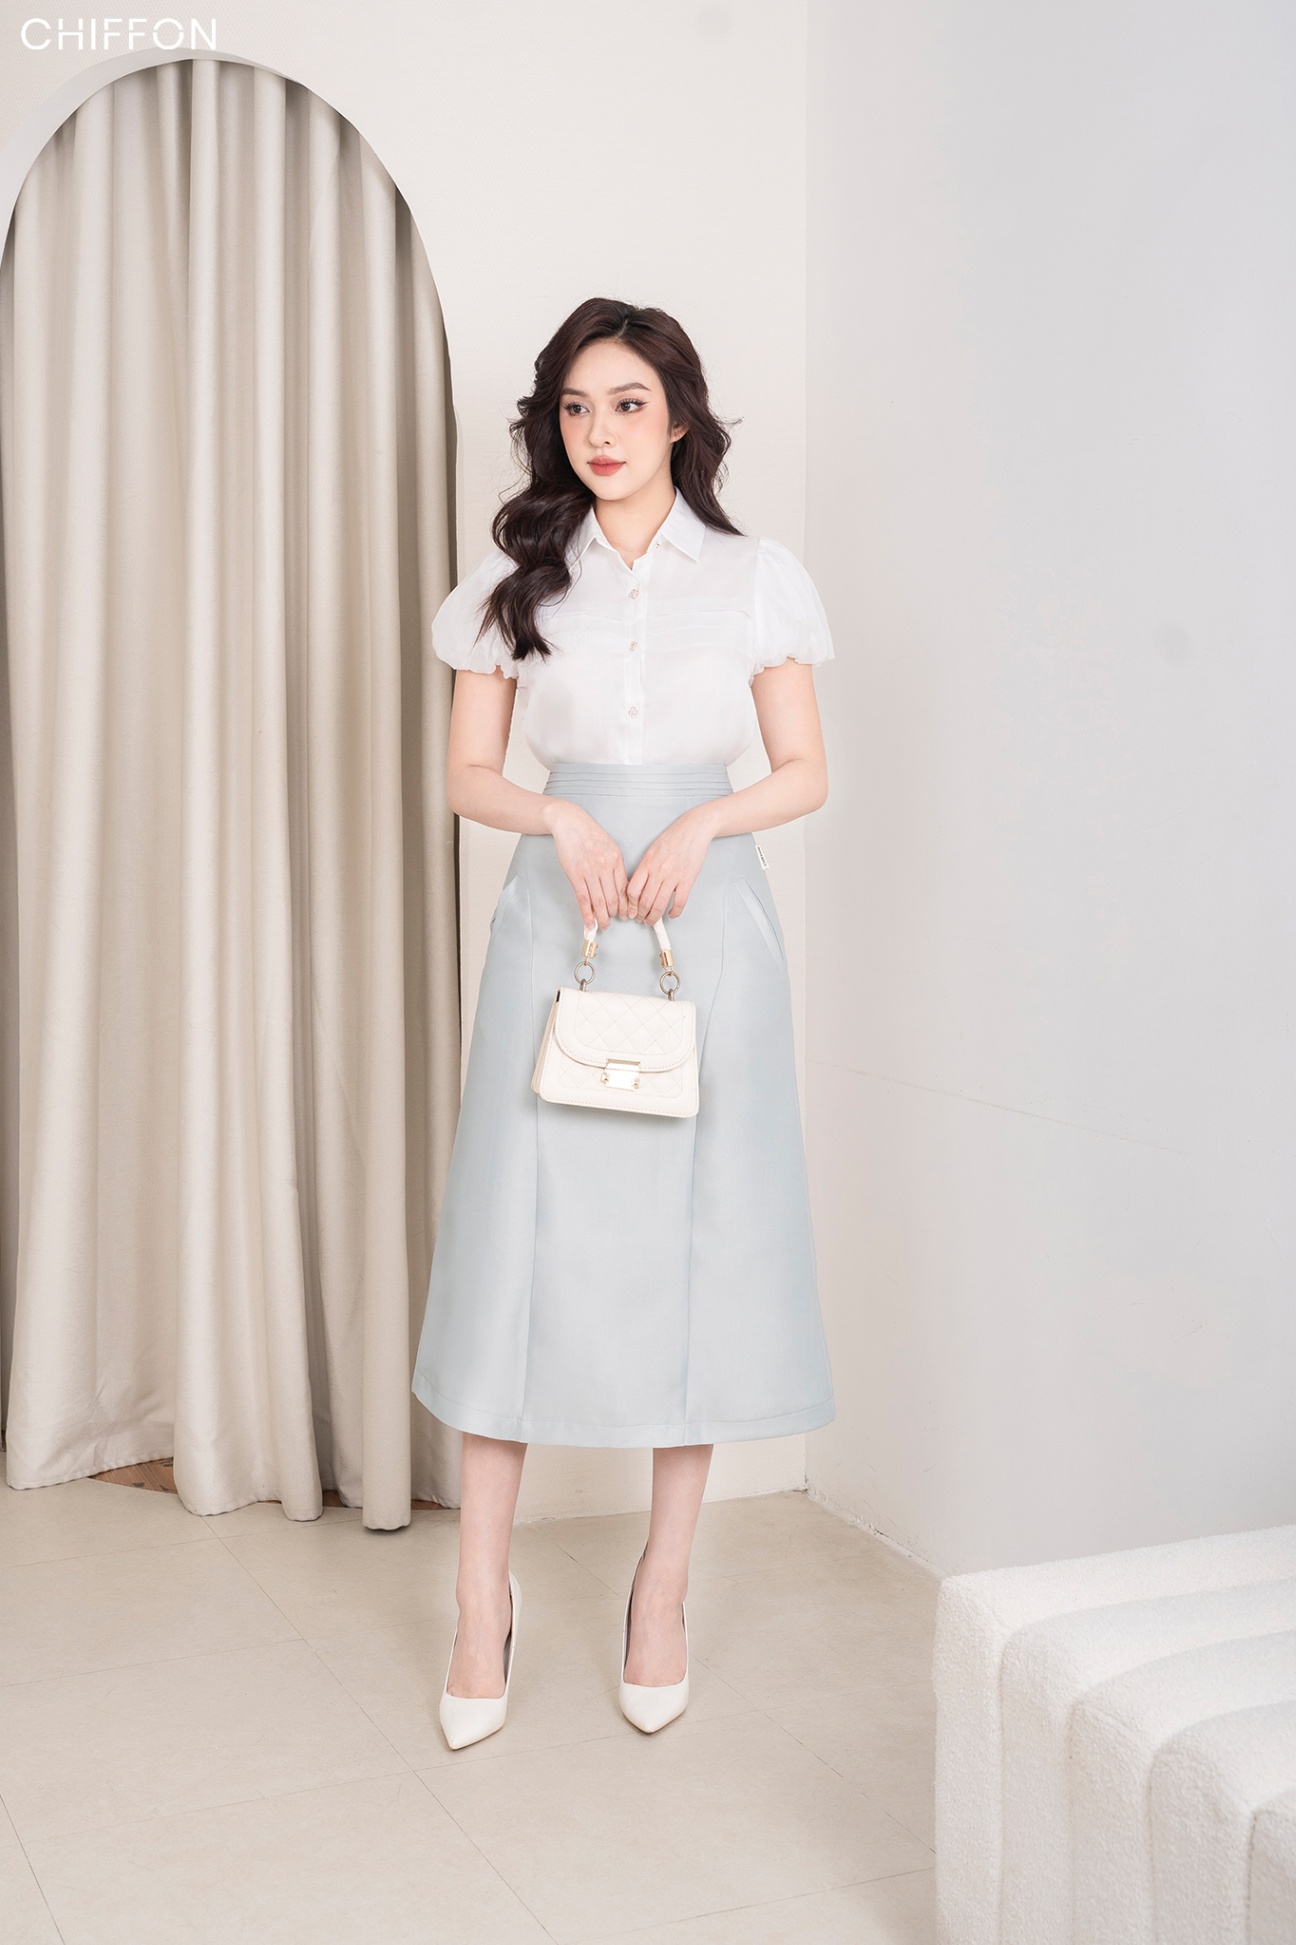 Đầm Xòe Voan Chiffon S&M Cổ Bẻ Đính Nút Tôn Dáng, Xinh Đẹp, Giá Rẻ GR156  Xưởng Thời Trang Sỉ S&M